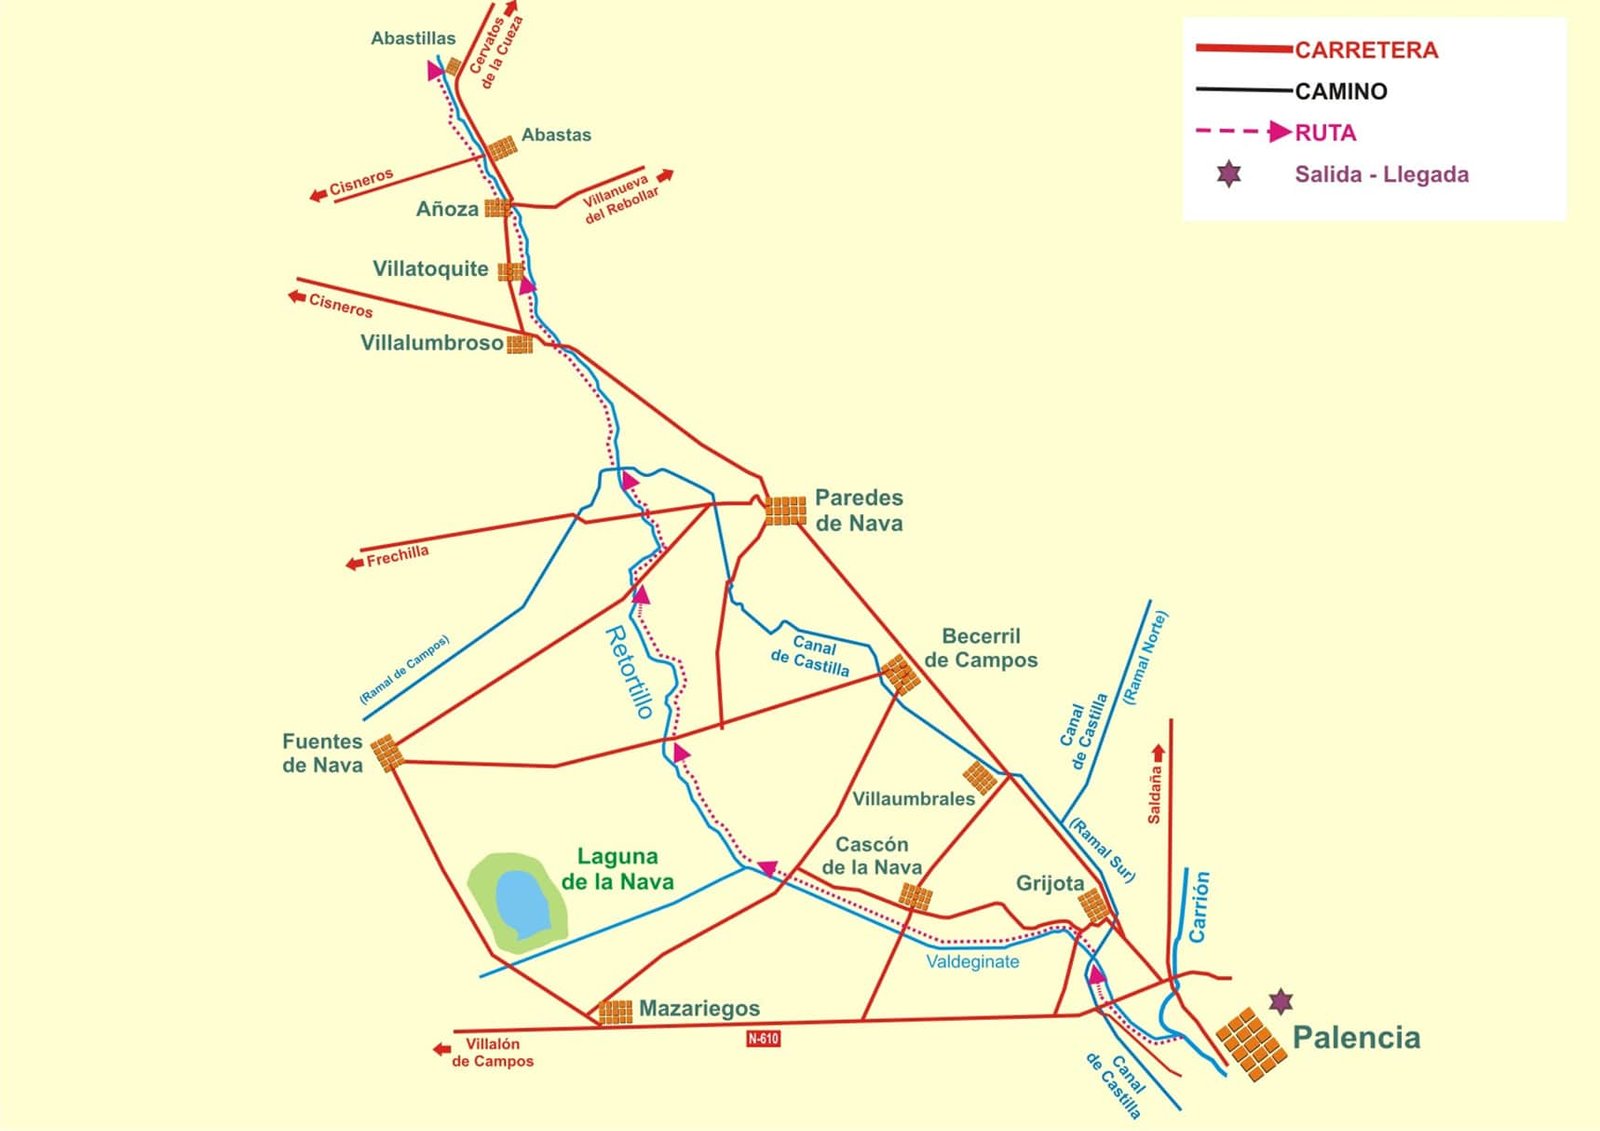 Ruta, canal de castilla - Orígenes de Europa